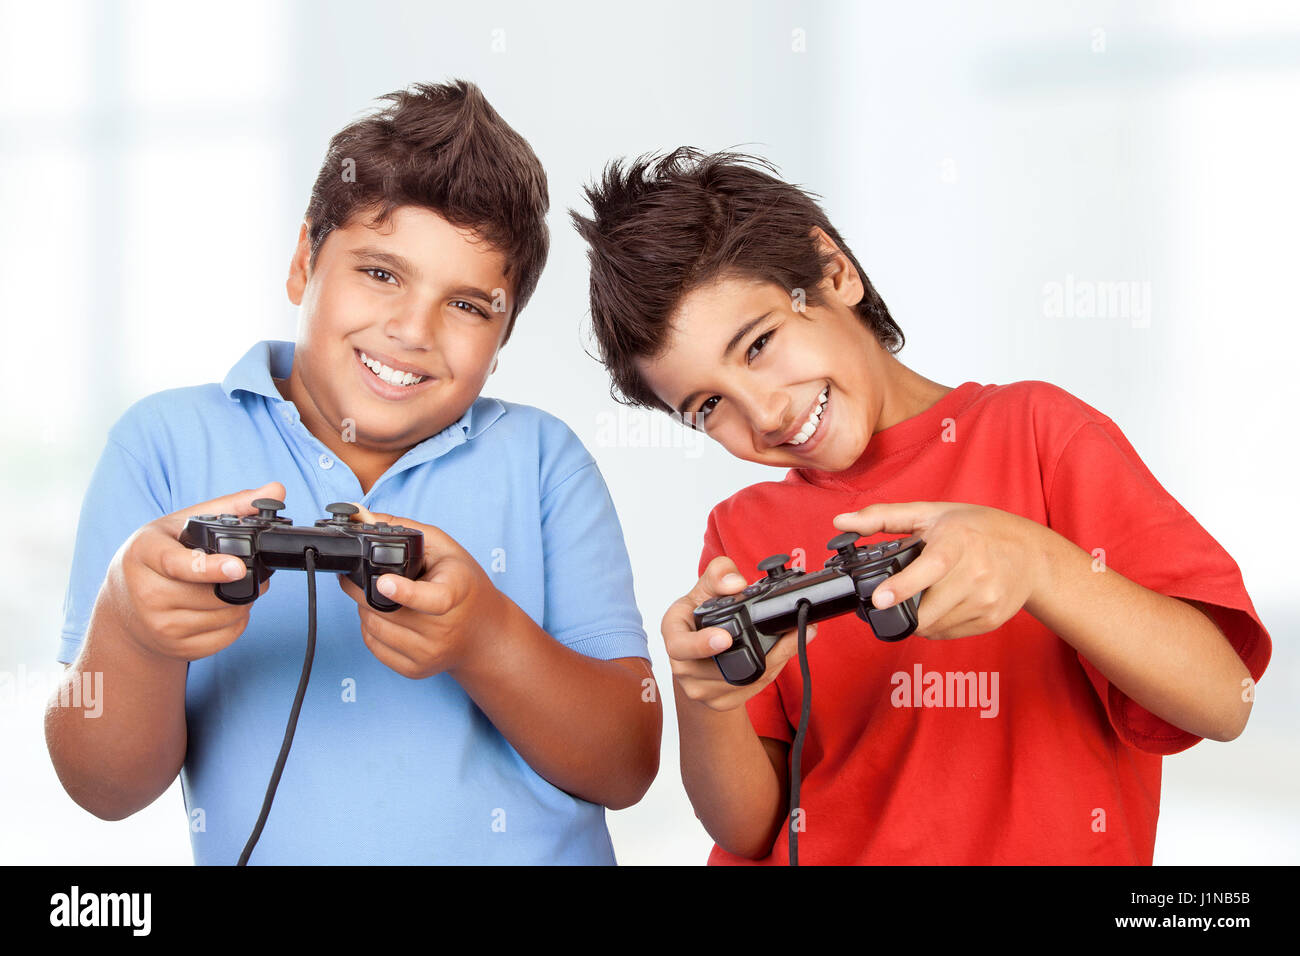 Porträt von einem zwei süße glücklich Jungs spielen von Videospielen zu  Hause, beste Freunde genießen Wettbewerb auf Playstation, mit Freude  gemeinsam Spaß haben Stockfotografie - Alamy